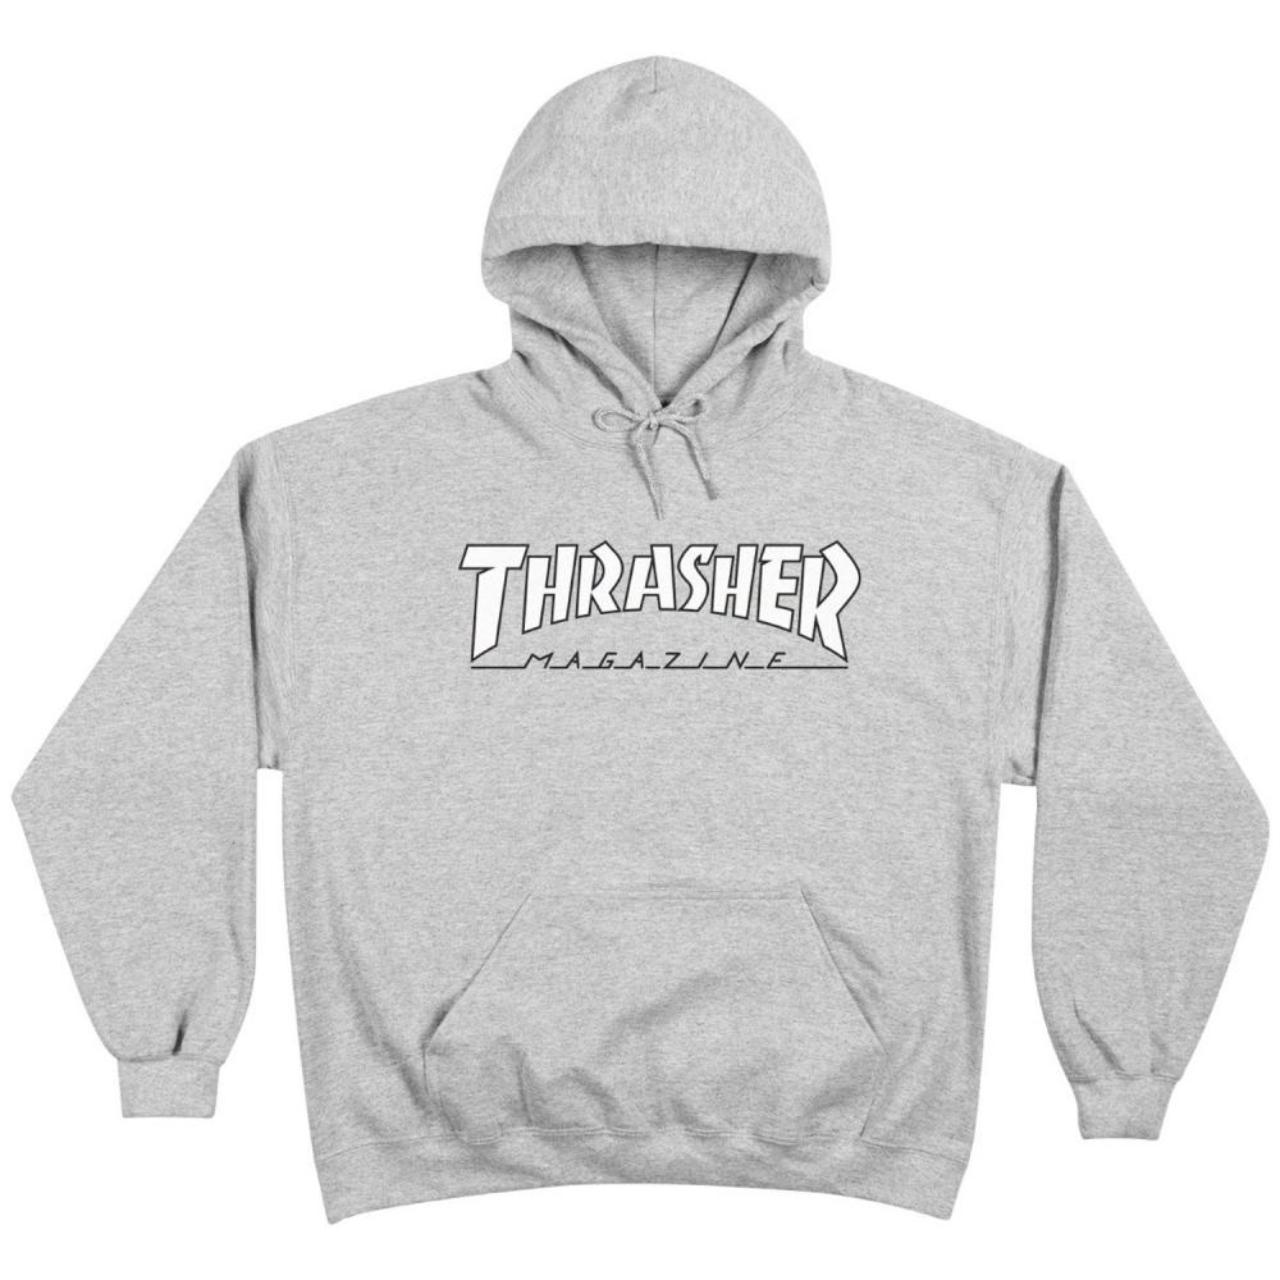 Thrasher Hoody - Outlined - Grey/White Brand new... - Depop